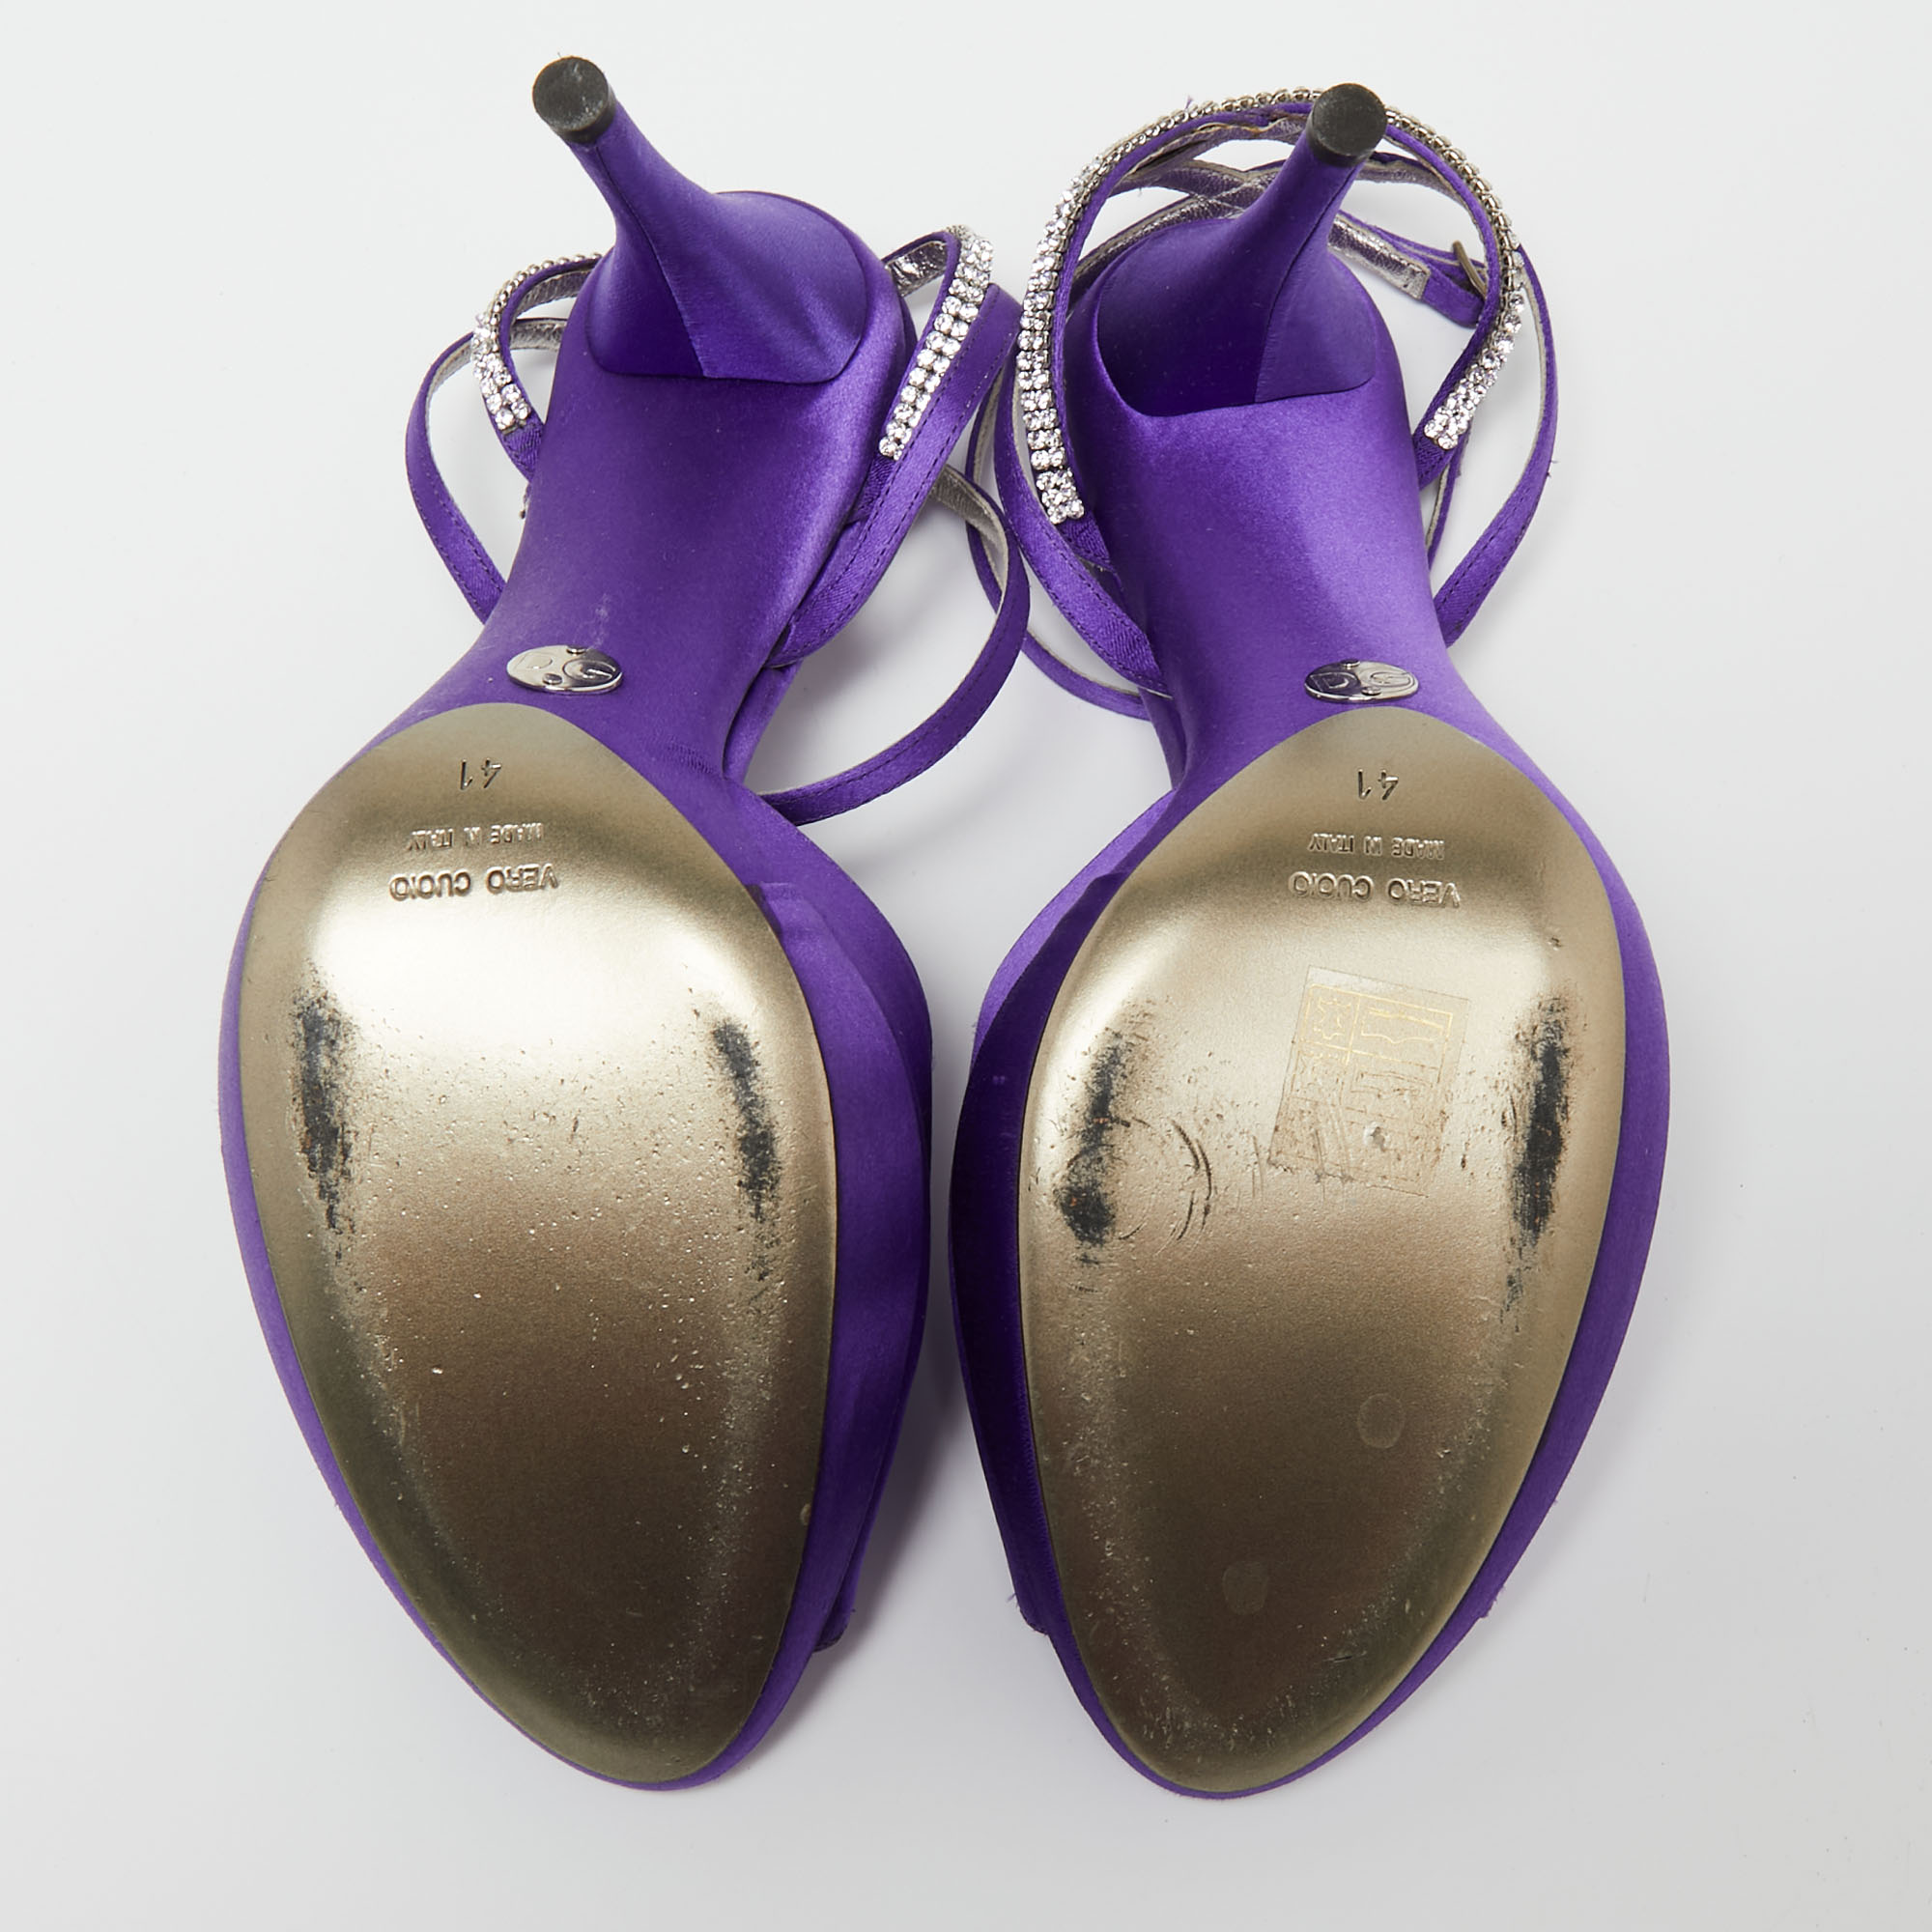 Dolce & Gabbana Purple Satin Crystal Embellished Ankle Strap Platform Sandals Size 41